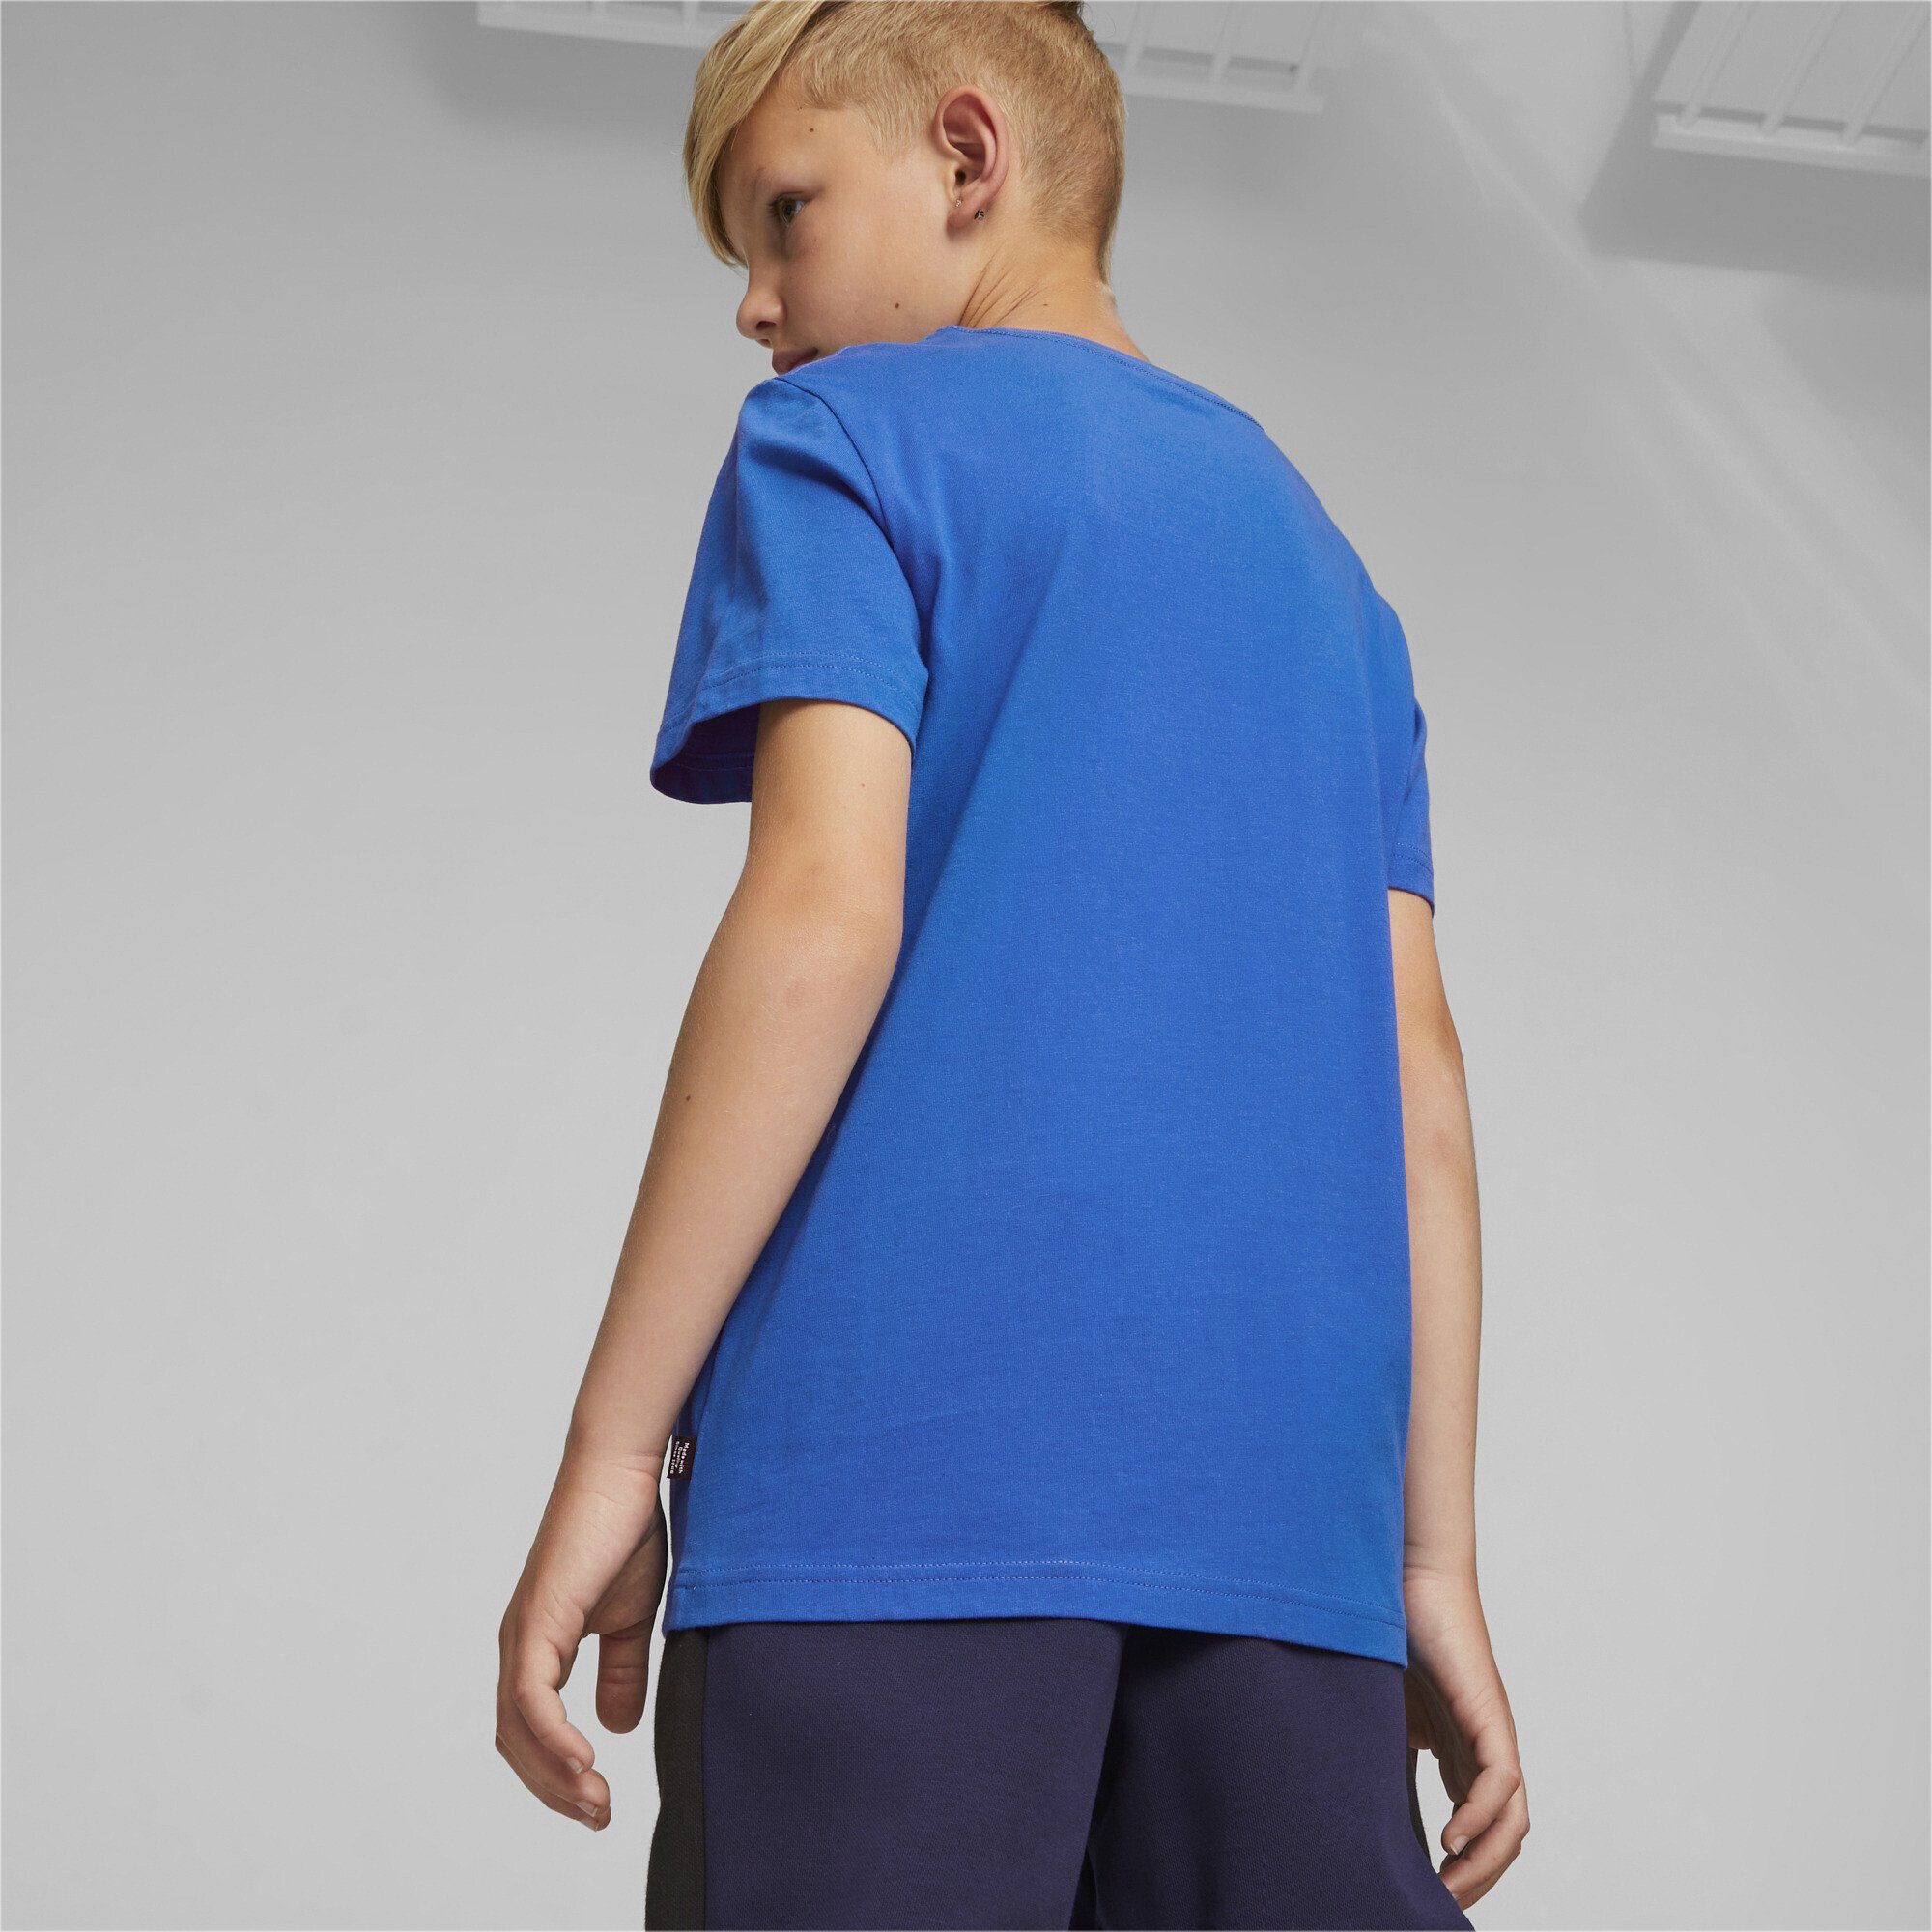 Logo Blue Jungen Essentials+ PUMA Two-Tone Racing Trainingsshirt T-Shirt